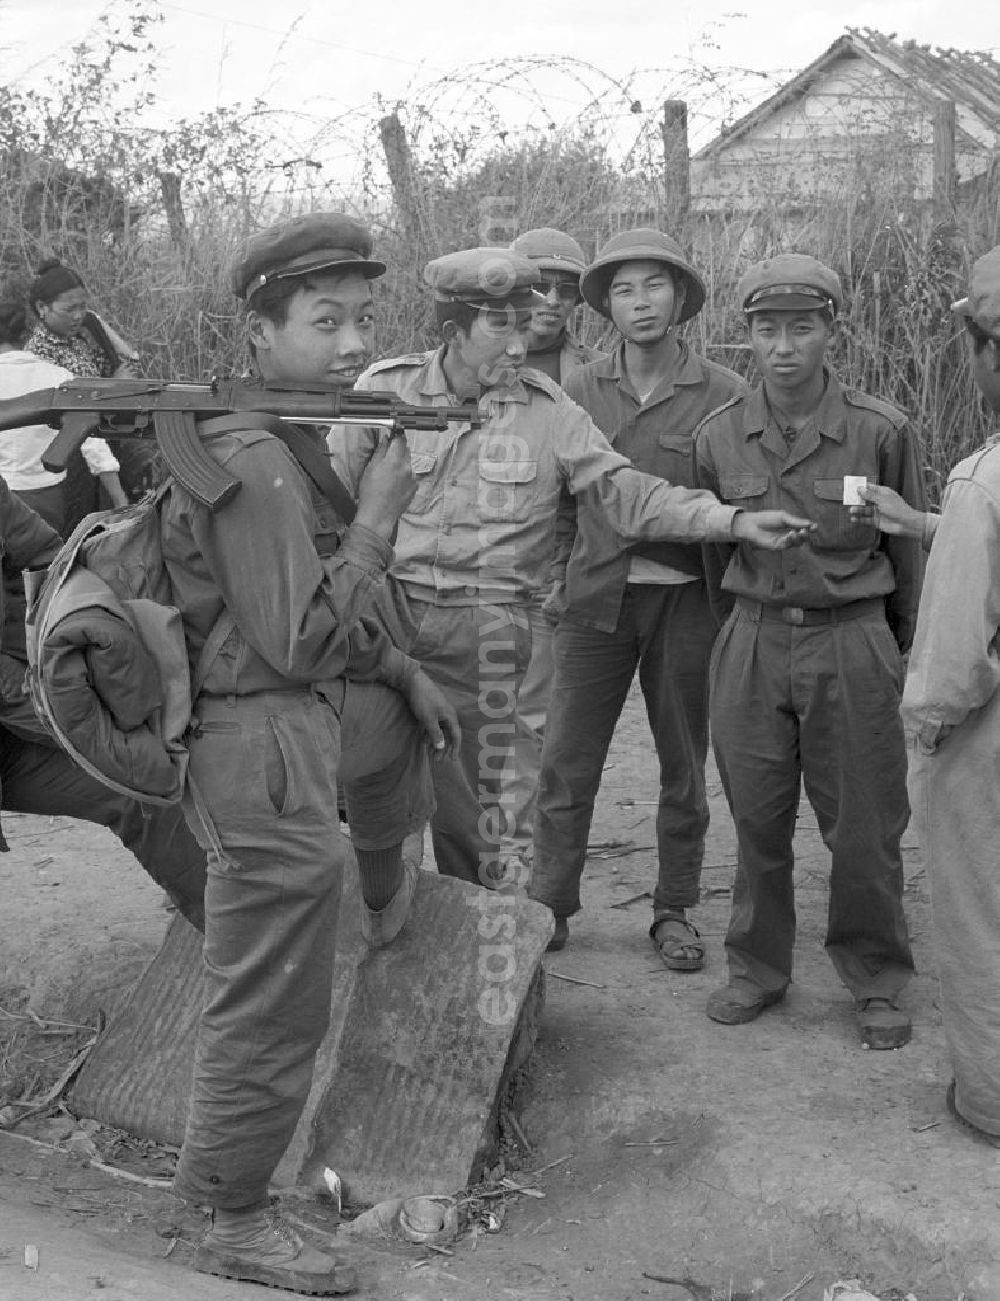 Xieng Khouang: Soldaten aus dem Volksstamm der Meo (auch Hmong) auf einer Straße nahe sogenannten Ebene der Tonkrüge in der Provinz Xieng Khouang in der Demokratischen Volksrepublik Laos. Die Hmong waren im Vietnam-Krieg involviert. In dessen Folge gehörten sie zu einer verfolgten und zurückgezogen lebenden Minderheit in Laos.